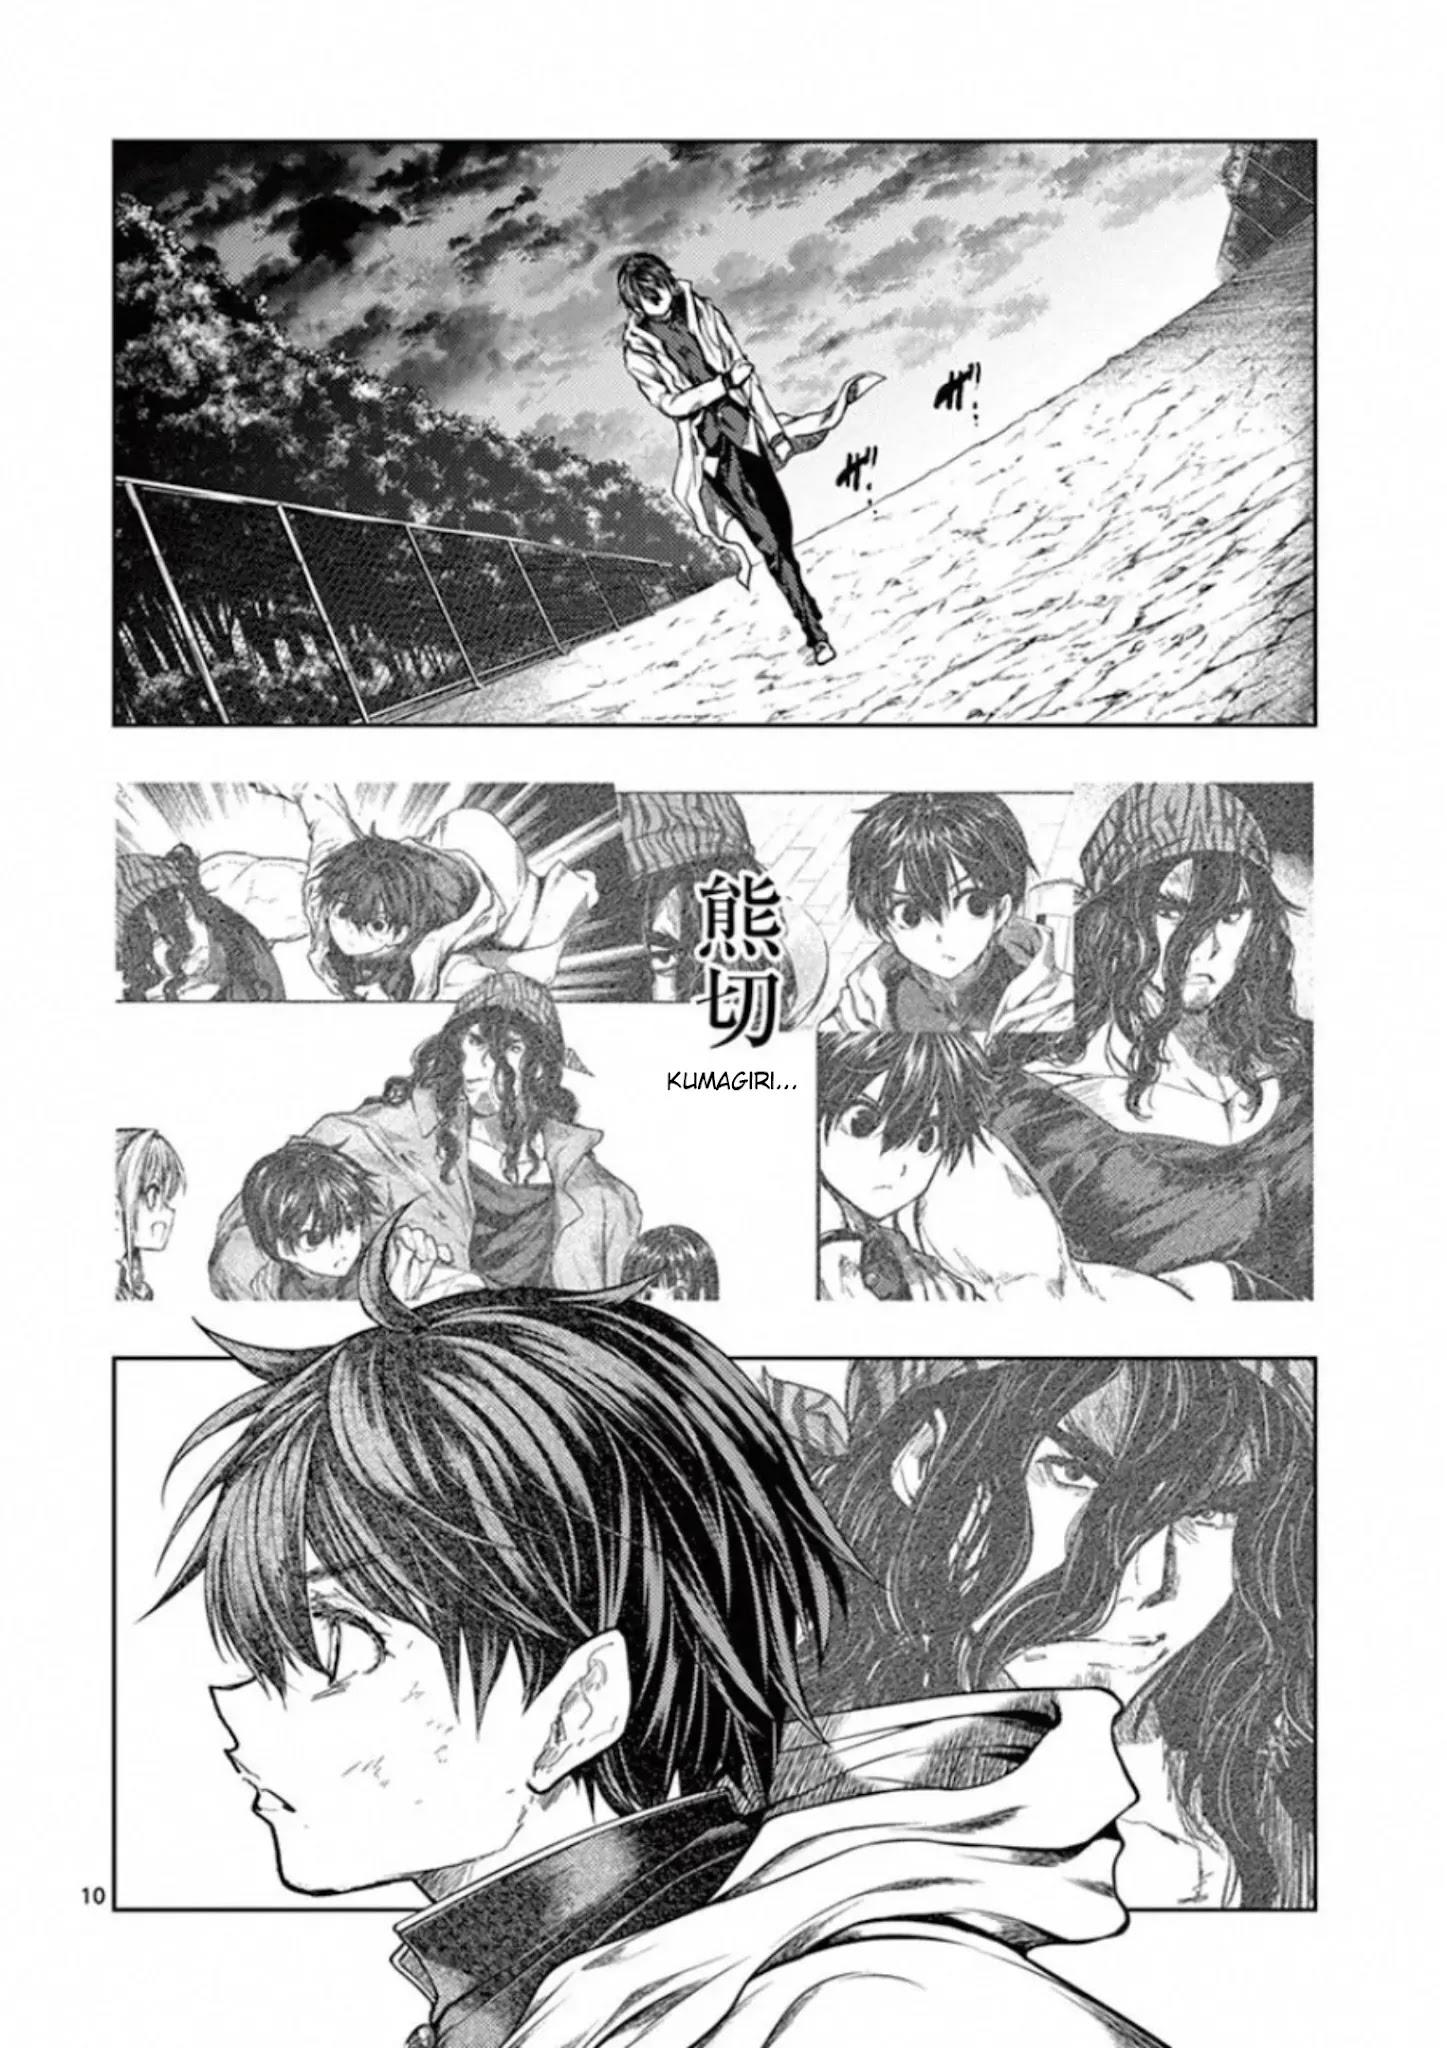 Read Deatte 5 Byou De Battle Chapter 176 - Manganelo